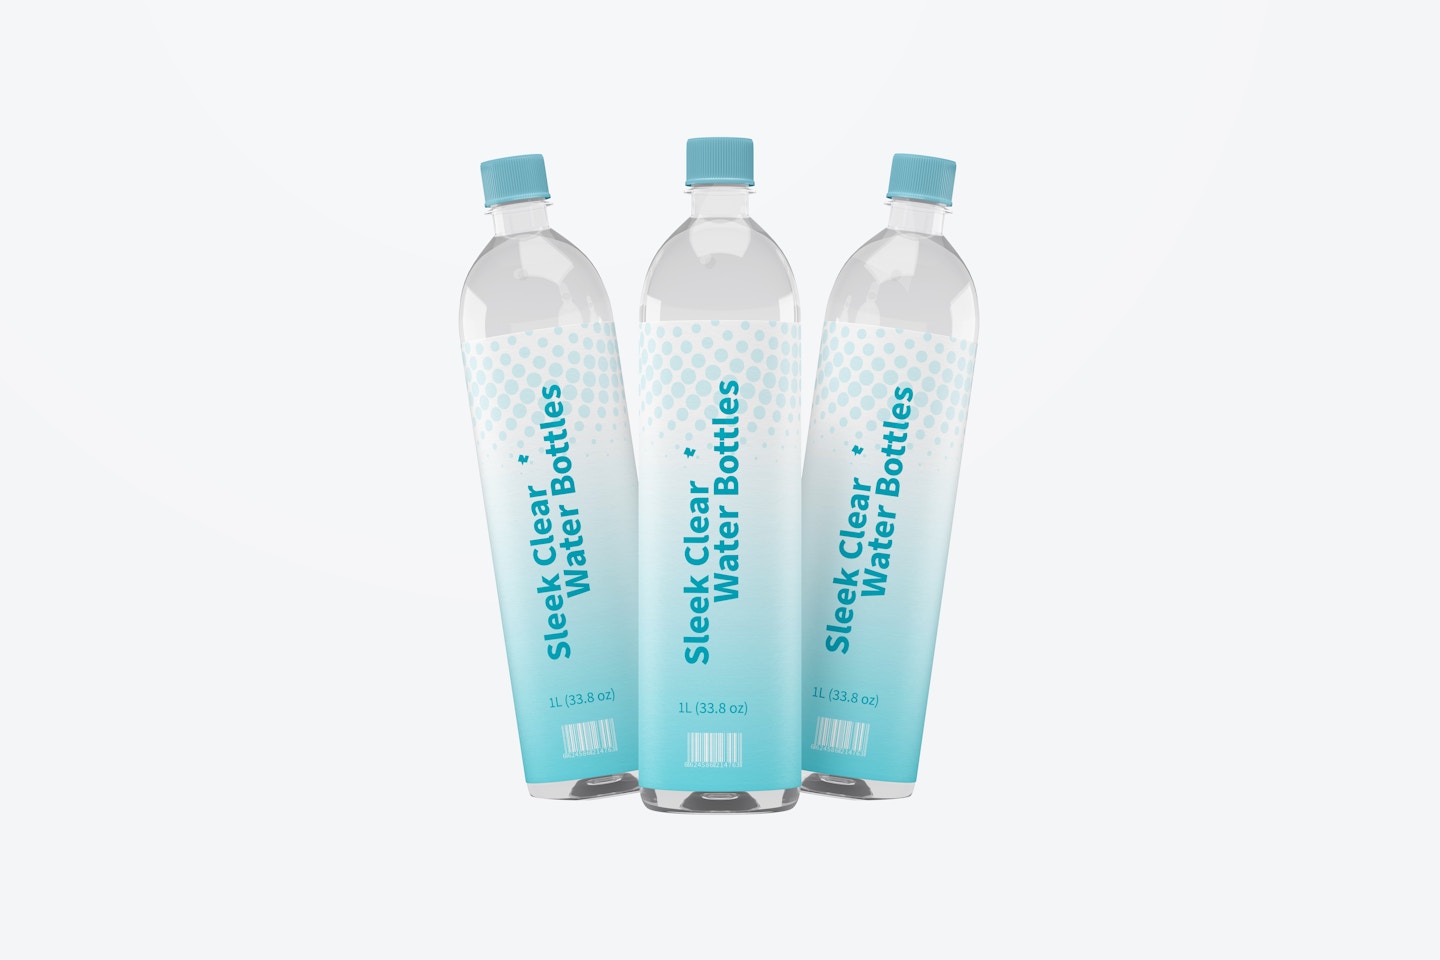 1L Sleek Clear Water Bottles Mockup